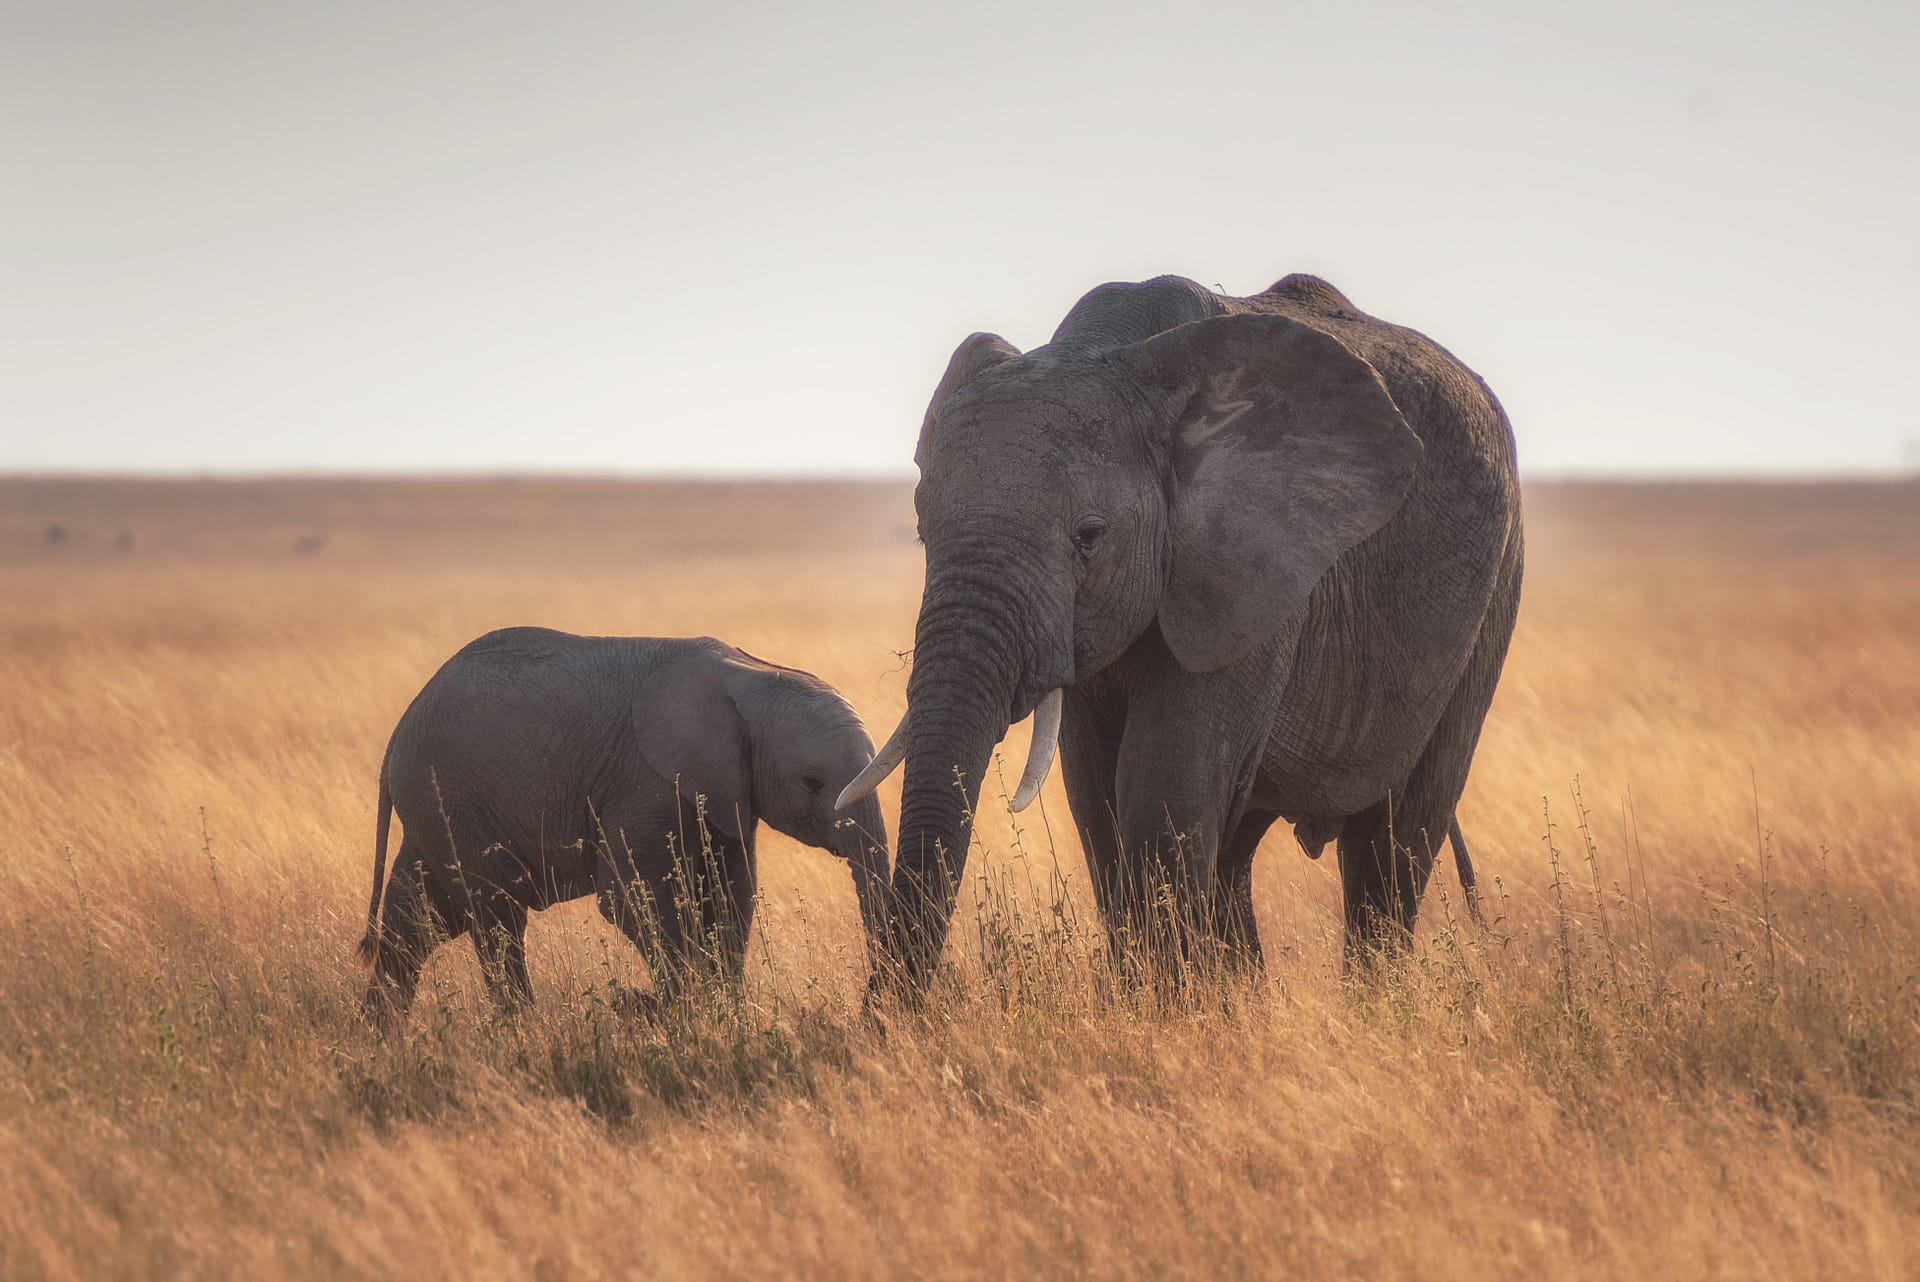 Mama Elephant and Baby Elephant
